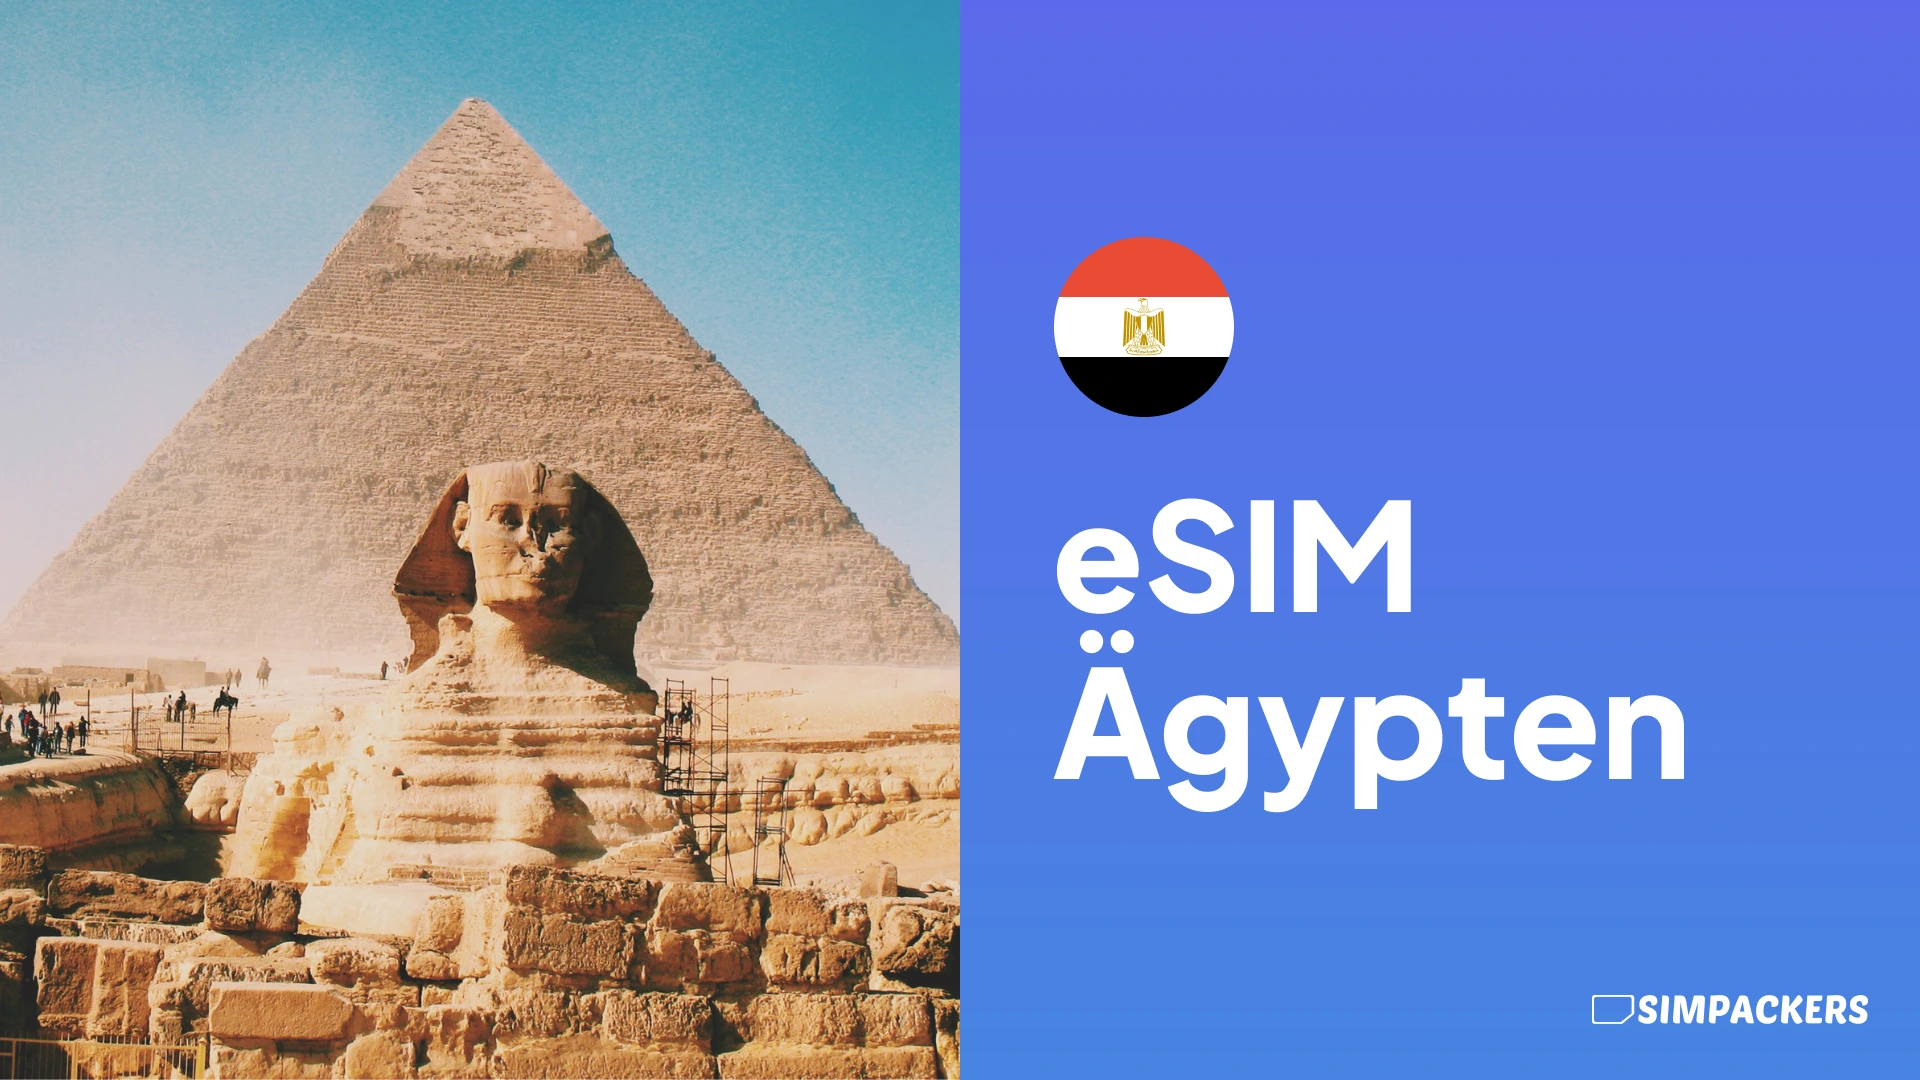 DE/FEATURED_IMAGES/esim-aegypten.webp